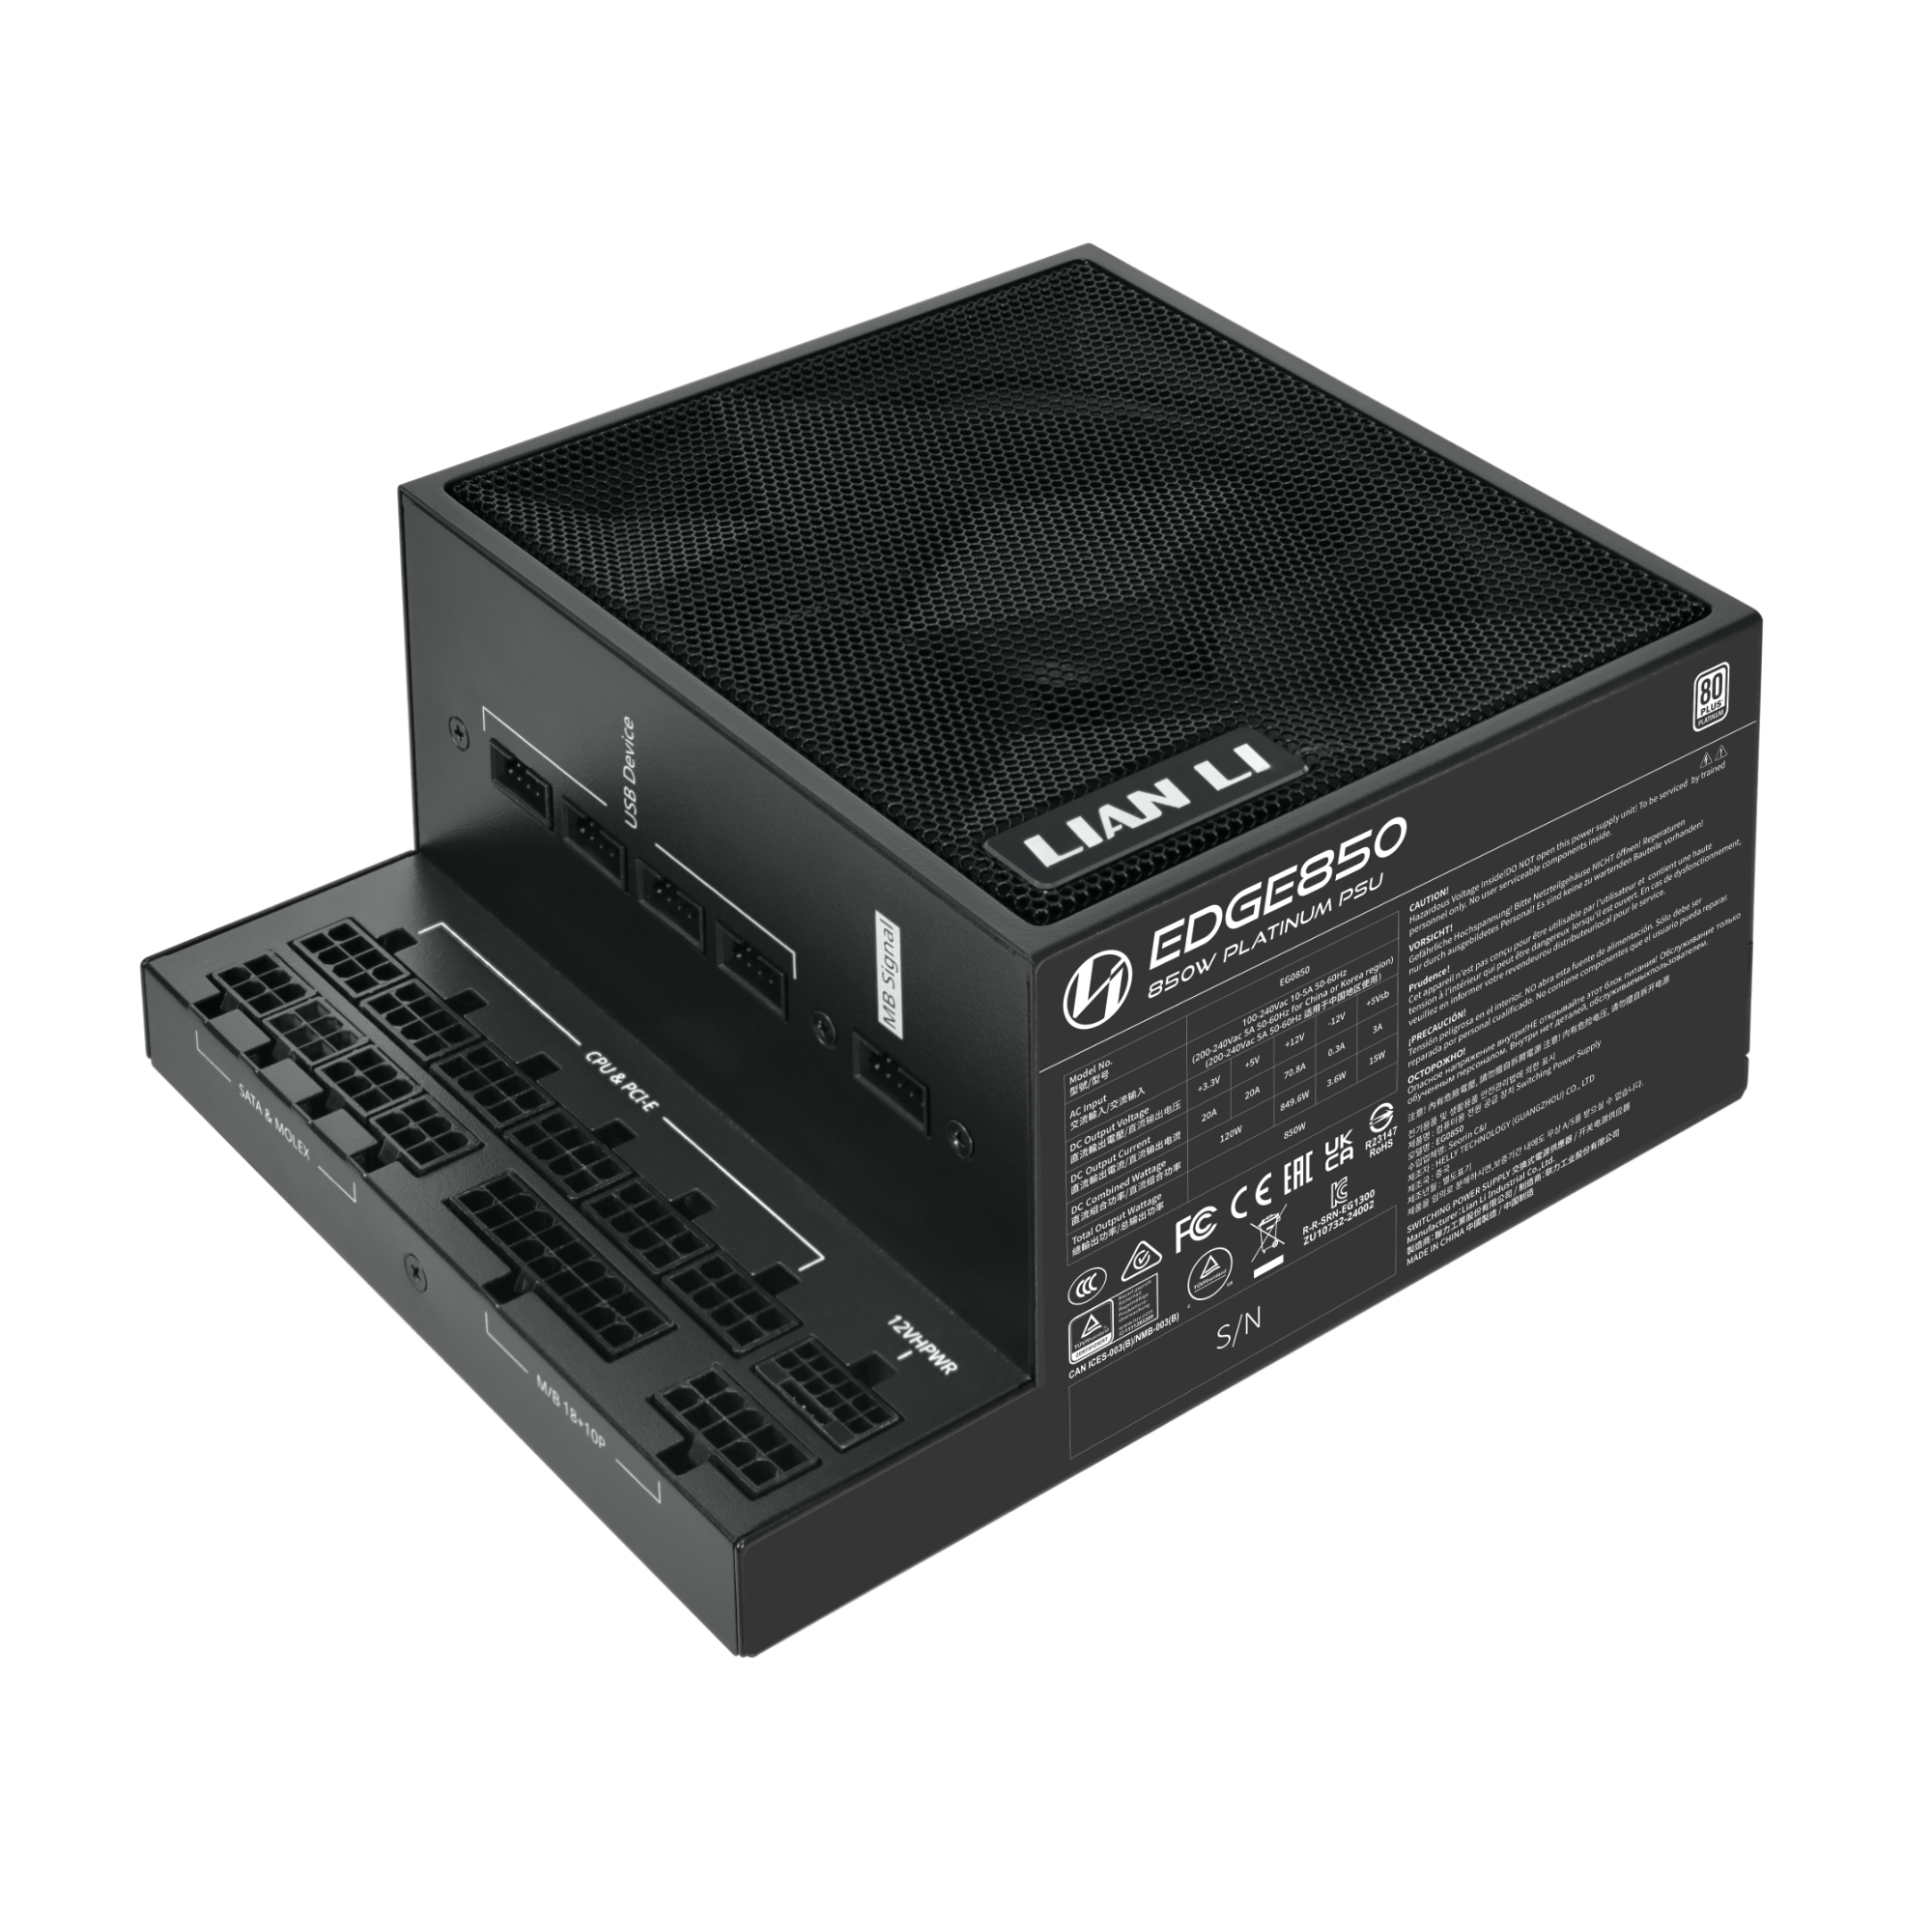 Lian Li EDGE 850w 80 Plus Platinum Power Supply - Black